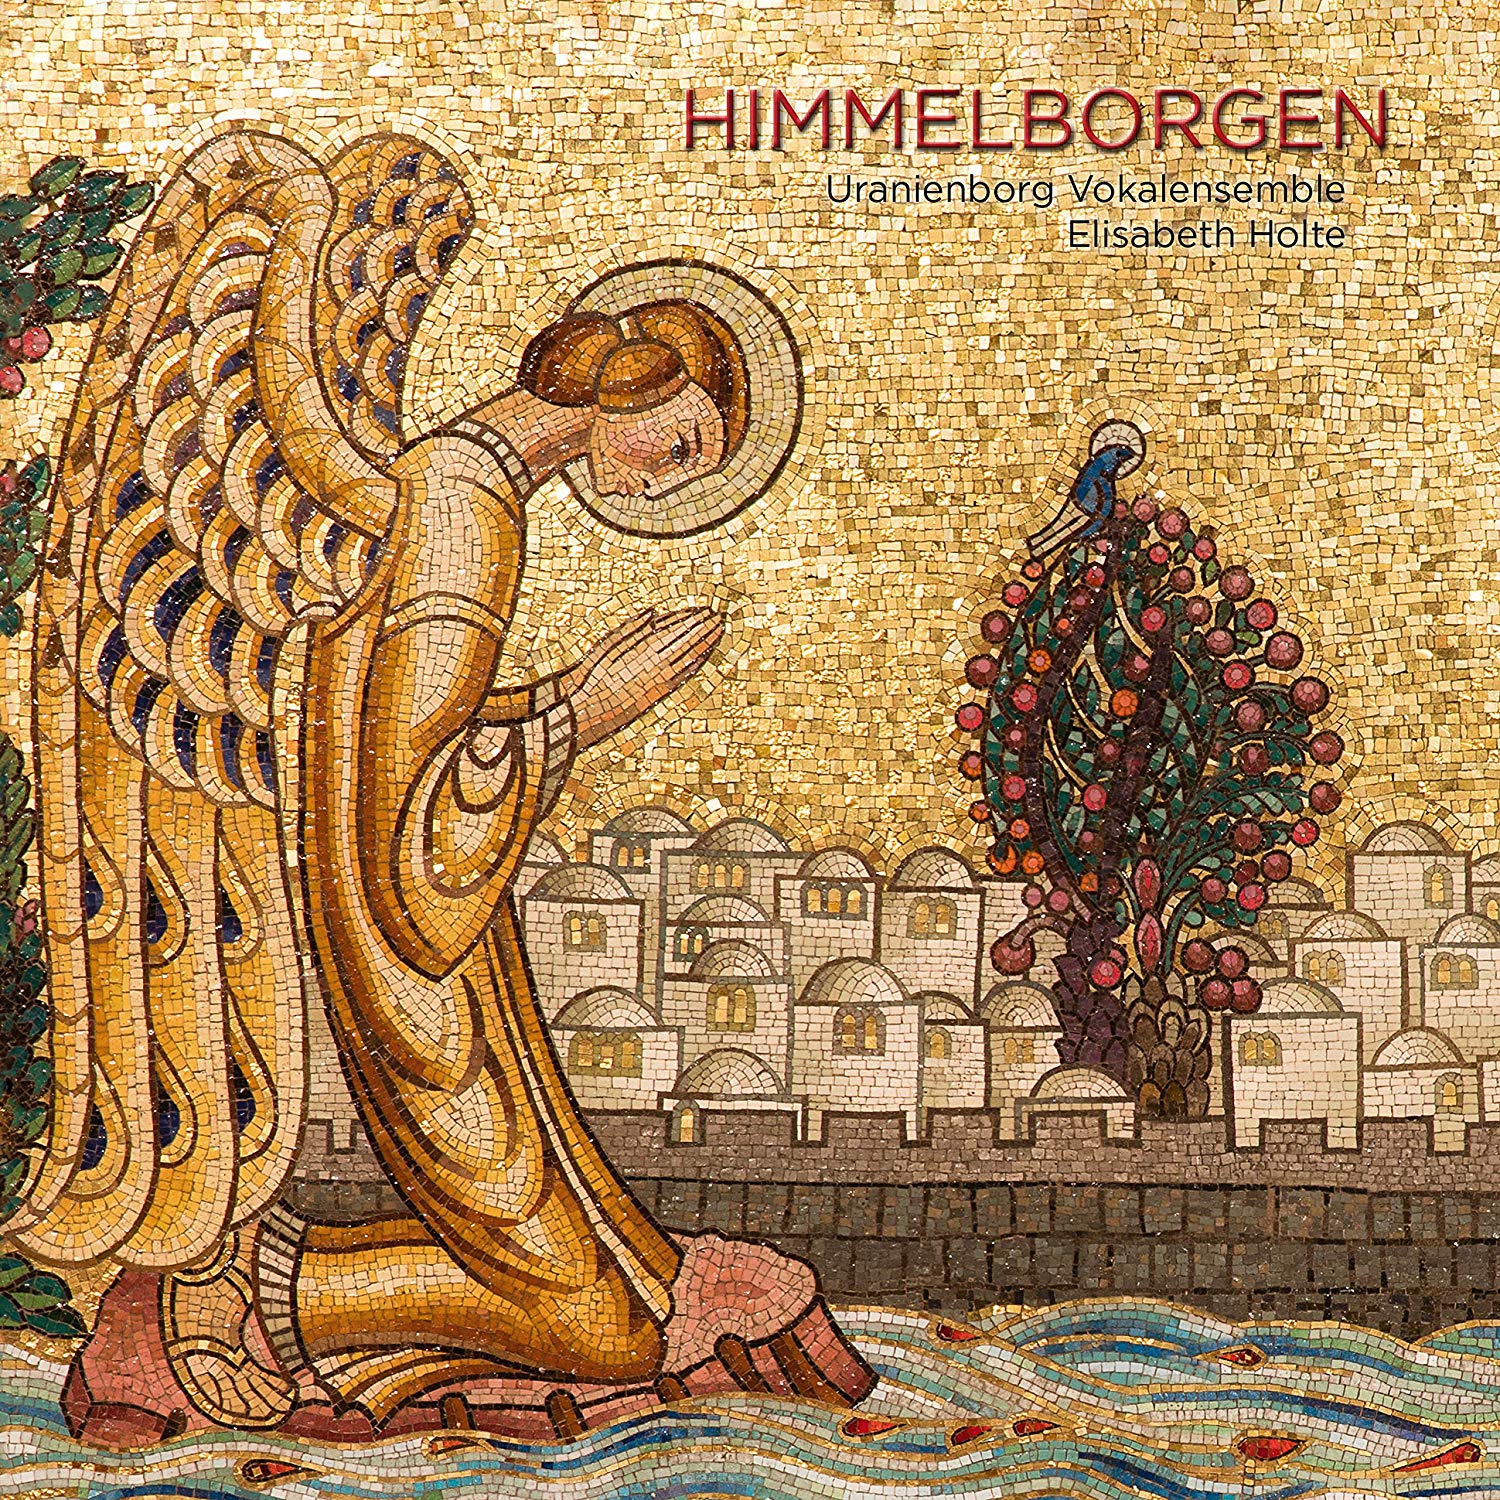 Musik-Disc mit Auro-3D und Atmos: Auf "Himmelrand" folgt nun "Himmelborgen"